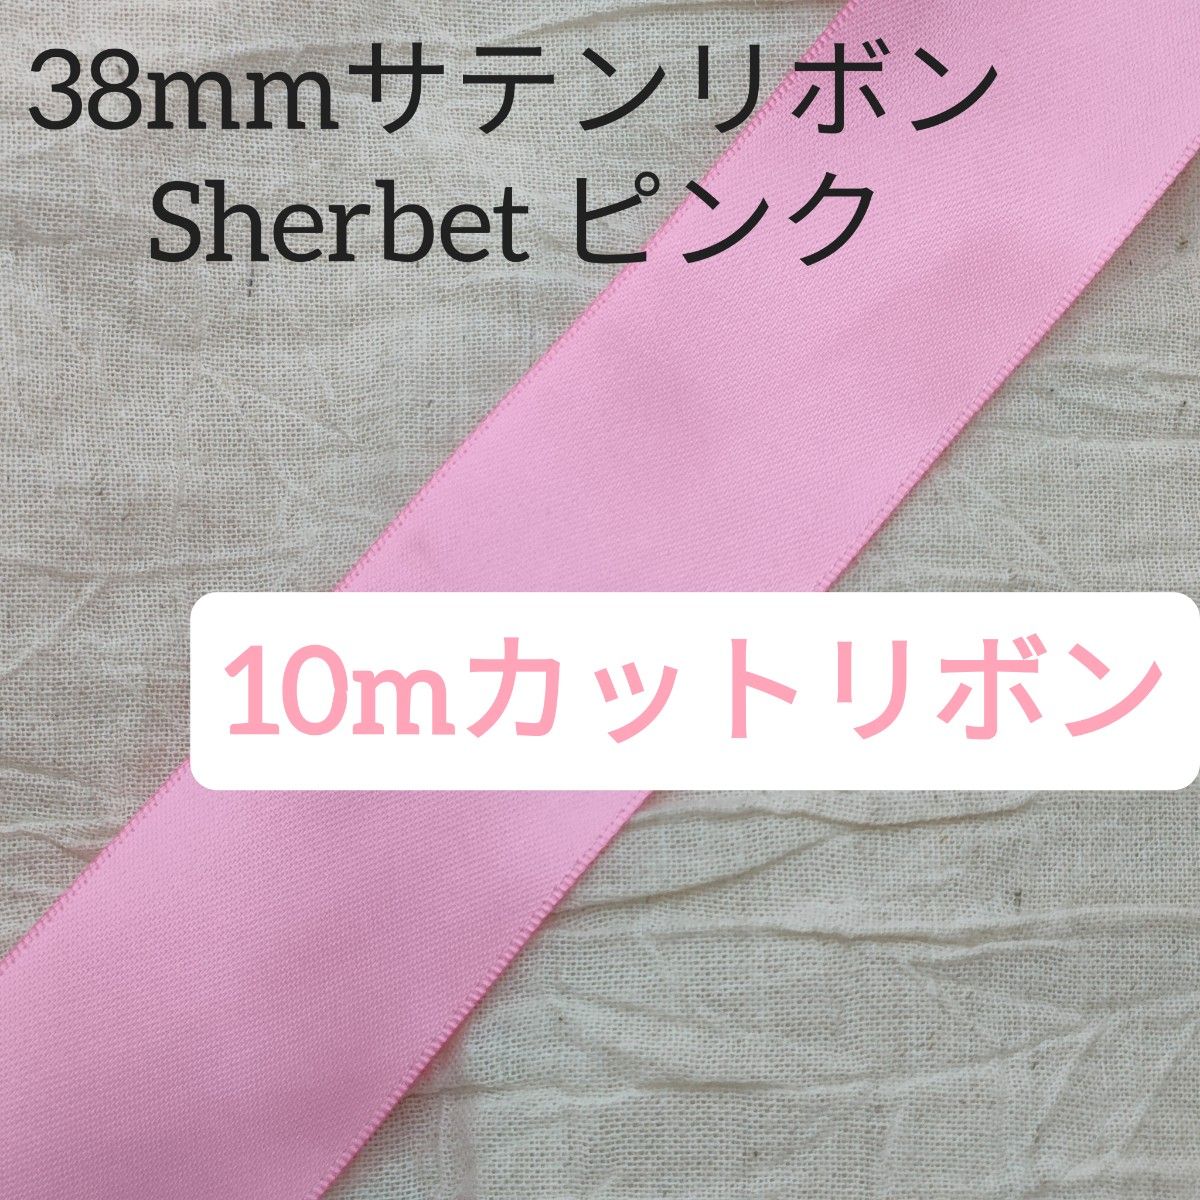 10m/両面サテンリボン38mm/Sherbet/ピンク/かわいい/ハンドメイド/カットリボン